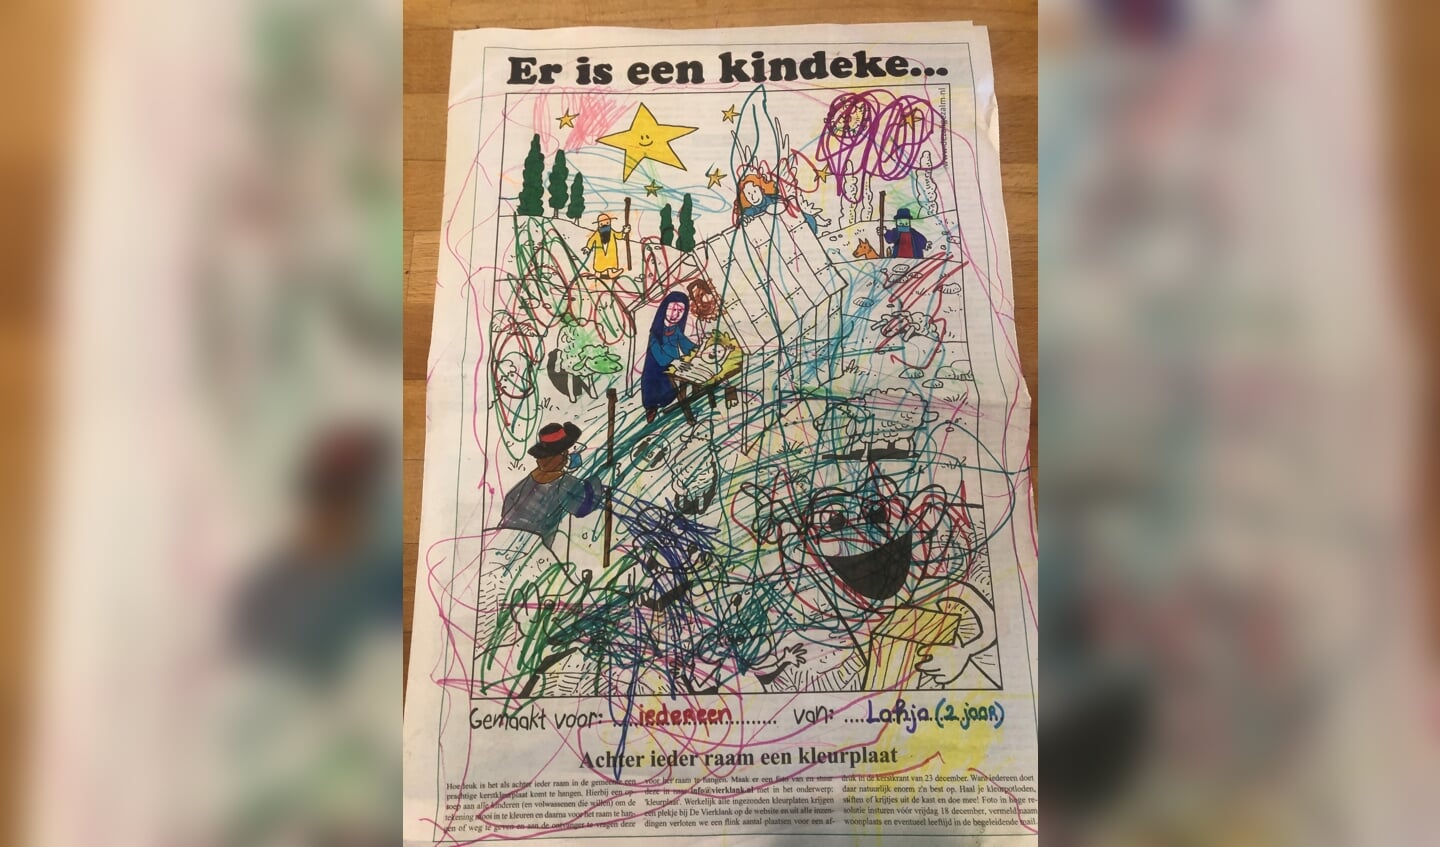 Lahja Gerhardt - 2 jaar heeft deze kleurplaat voor iedereen gemaakt, want “iedereen is lief”. Fijne feestdagen!